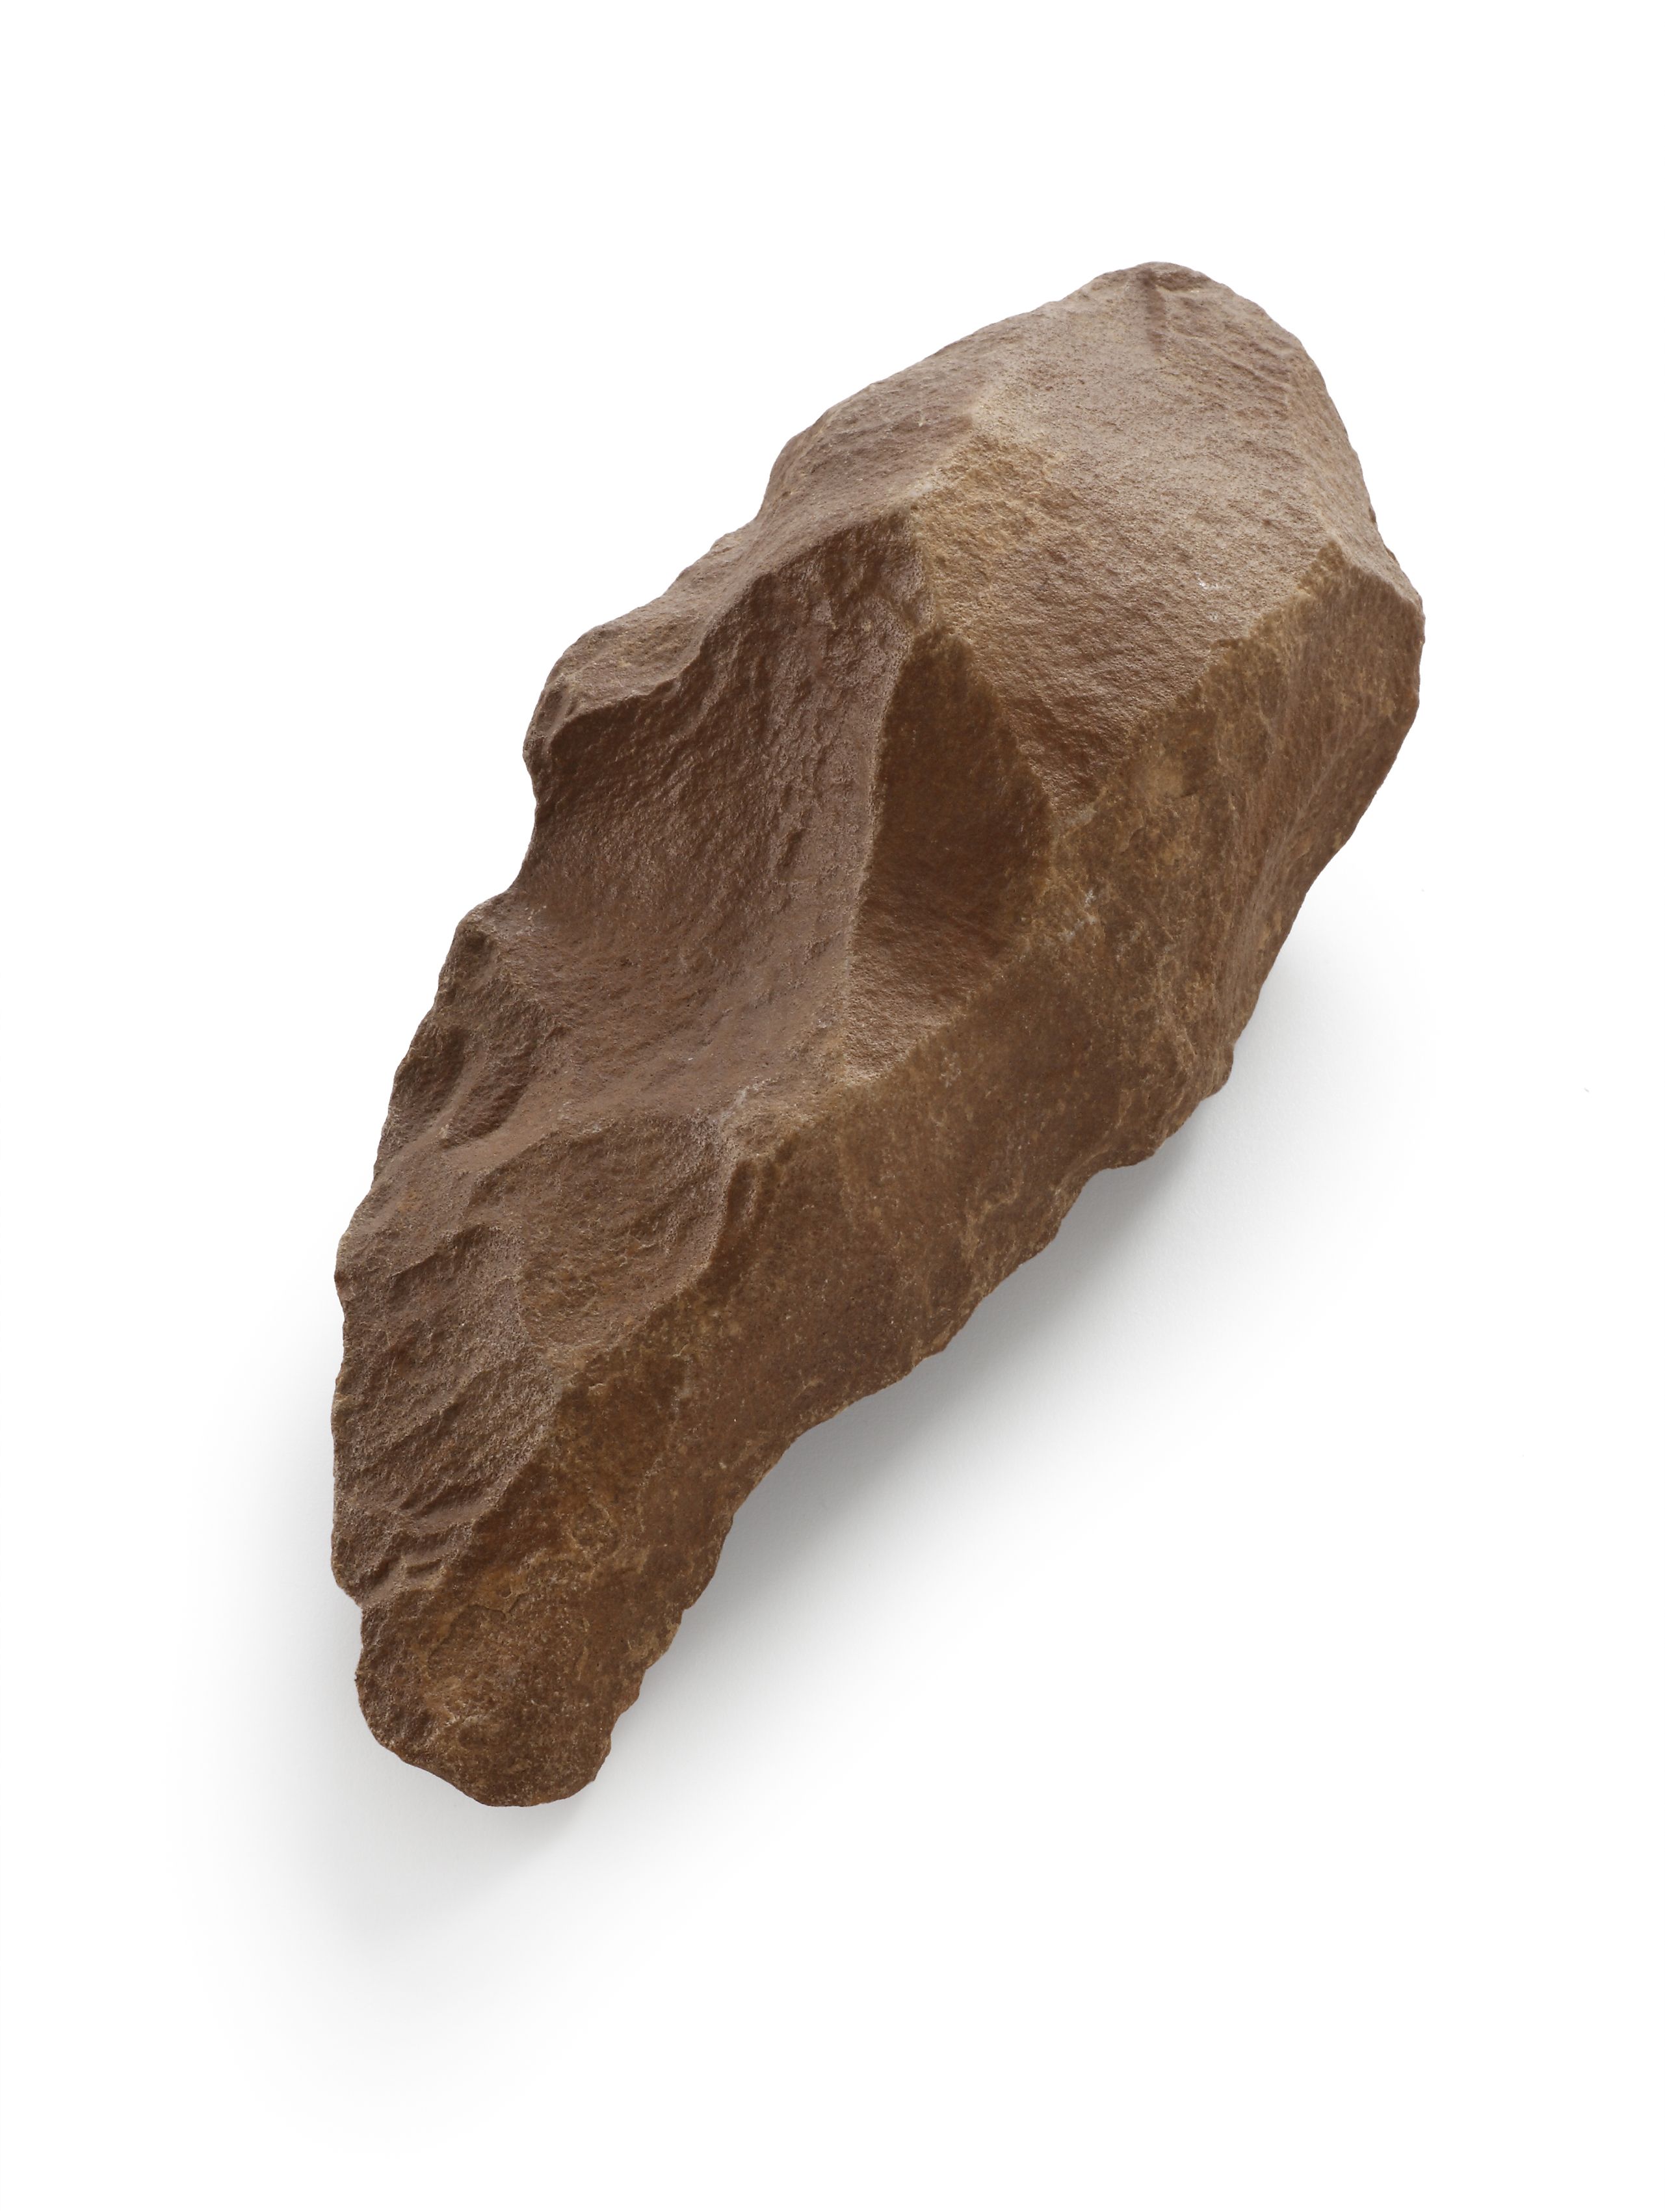 A stone axe, good, simple, design 